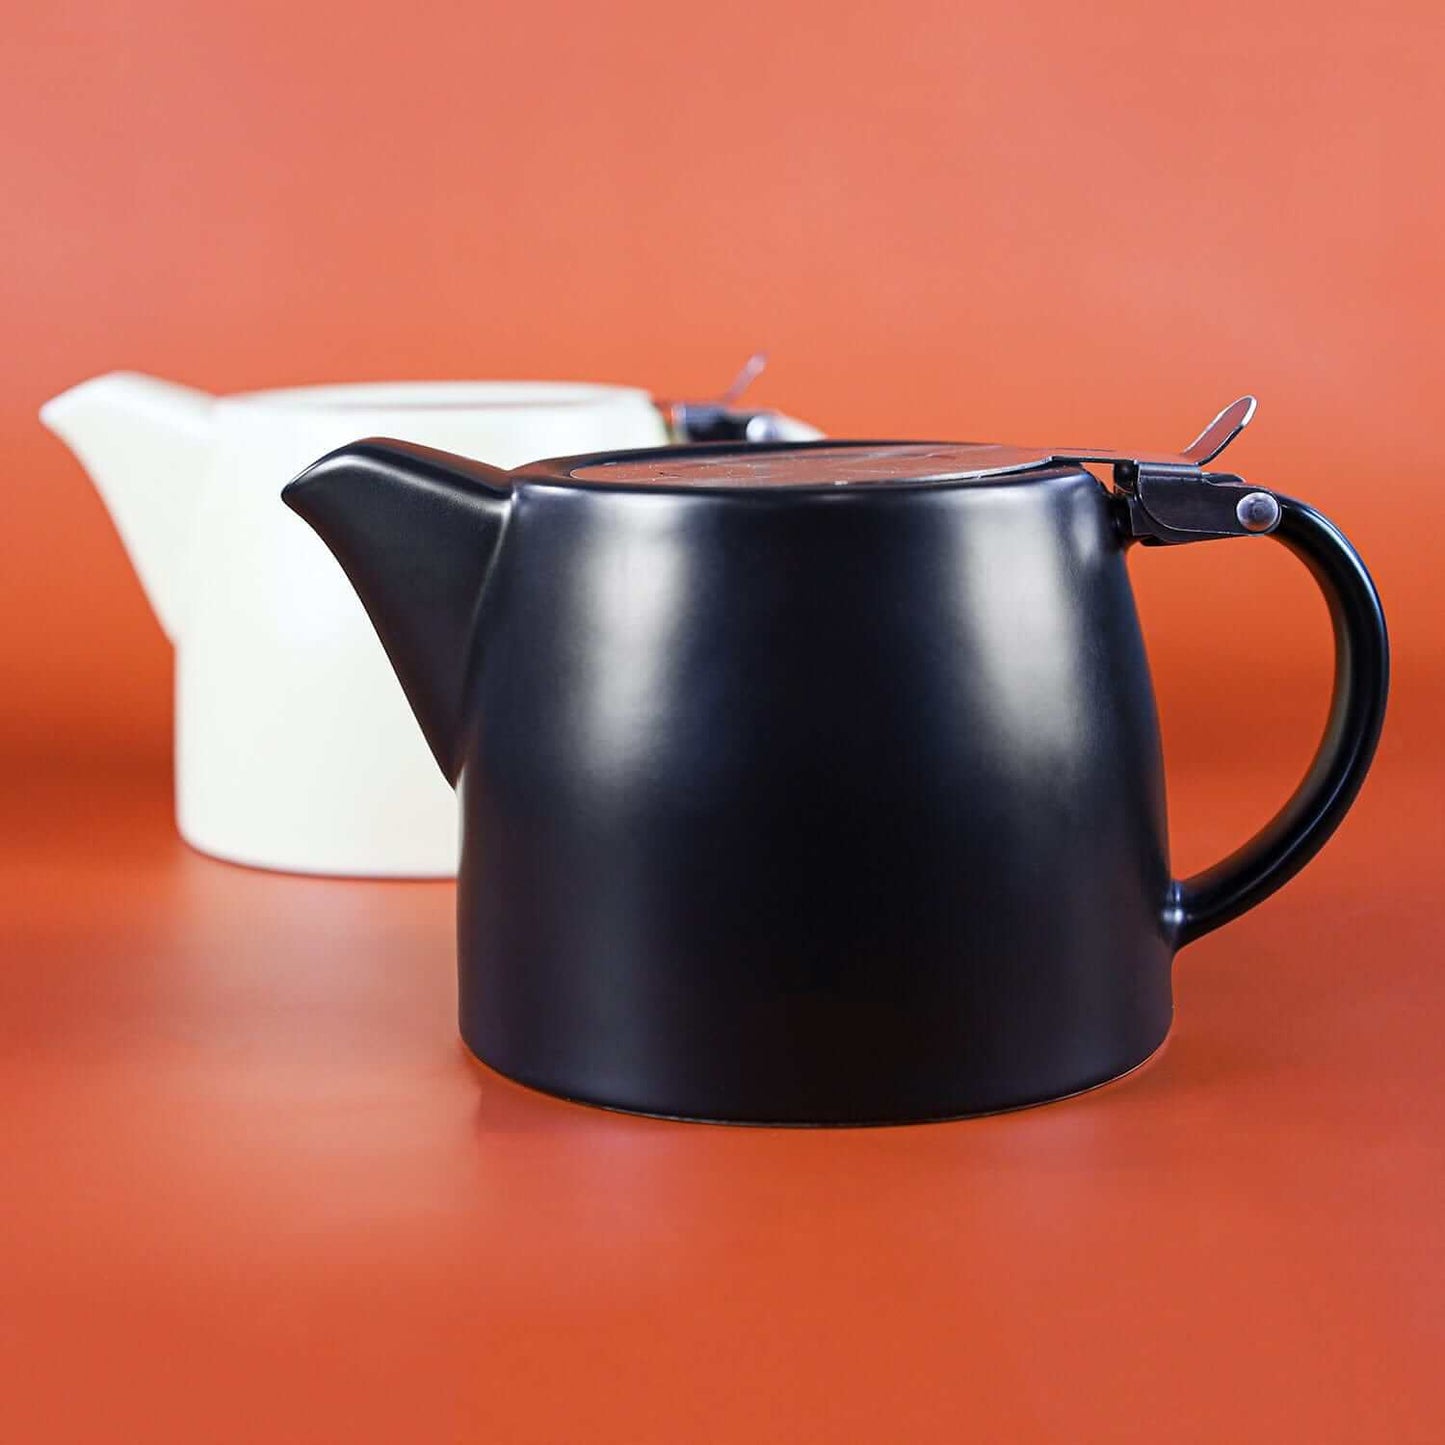 The Nordic Teapot: Black